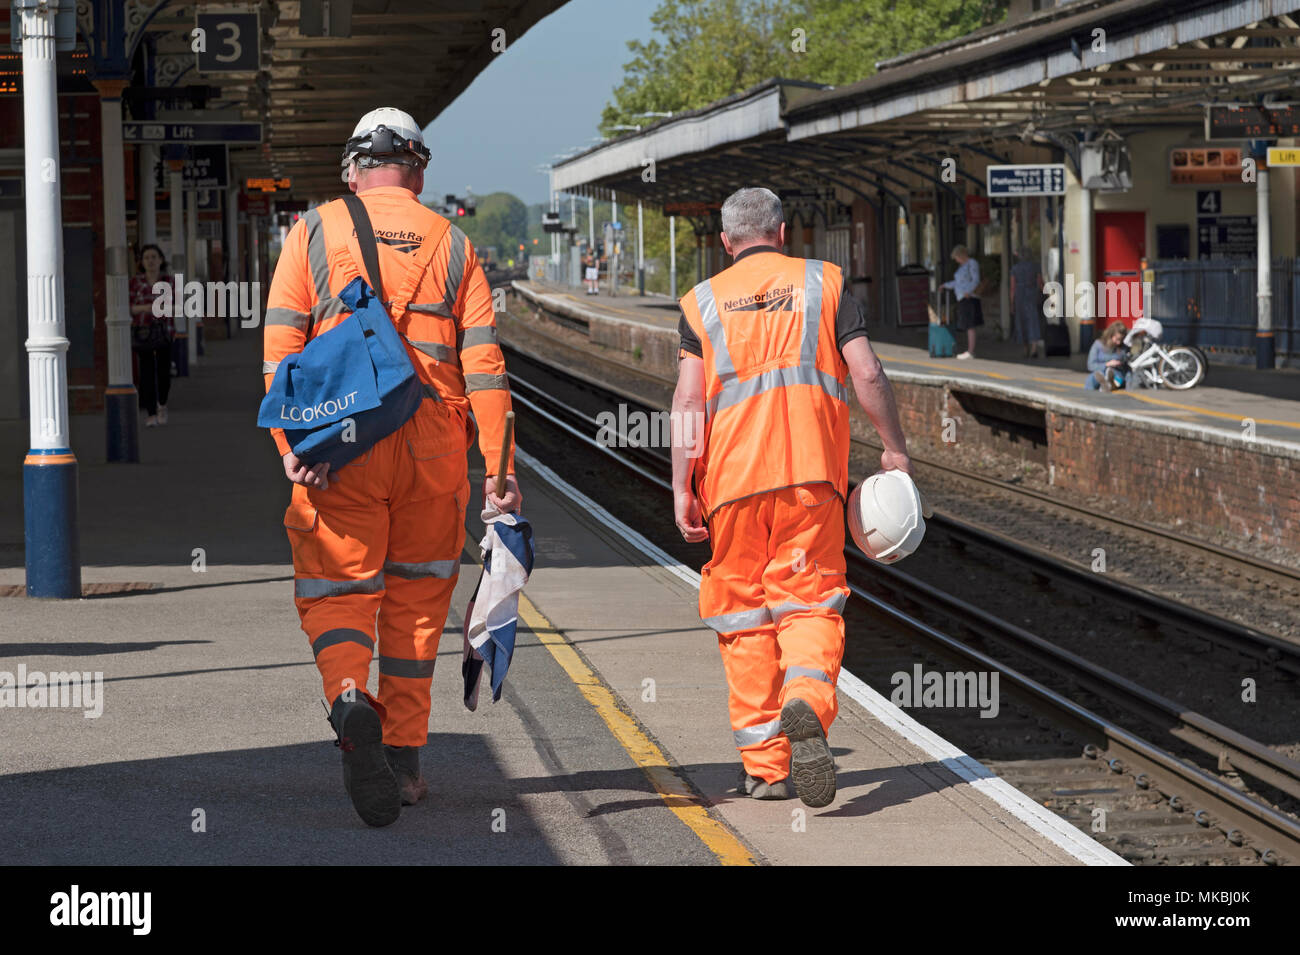 Dauerhafte Weise Ingenieure gekleidet in reflektierende Kleidung in Basingstoke, Hampshire, England, UK. Suche Mann mit Warnung Fahnen. Stockfoto